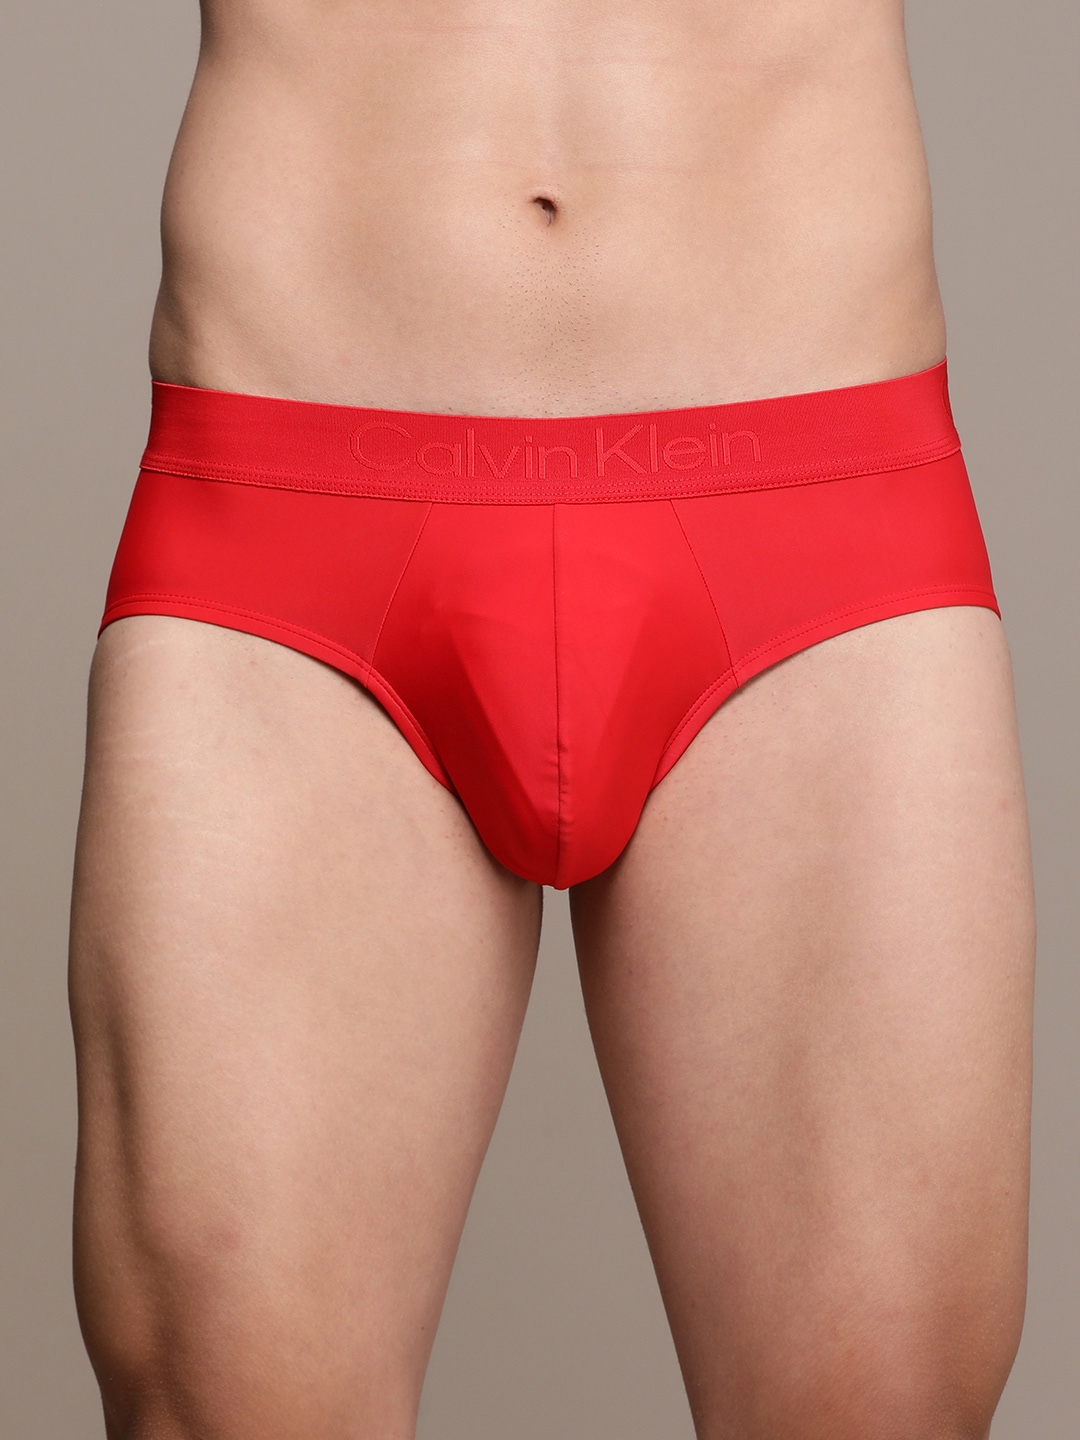 Calvin Klein Underwear - Underwear Men Red